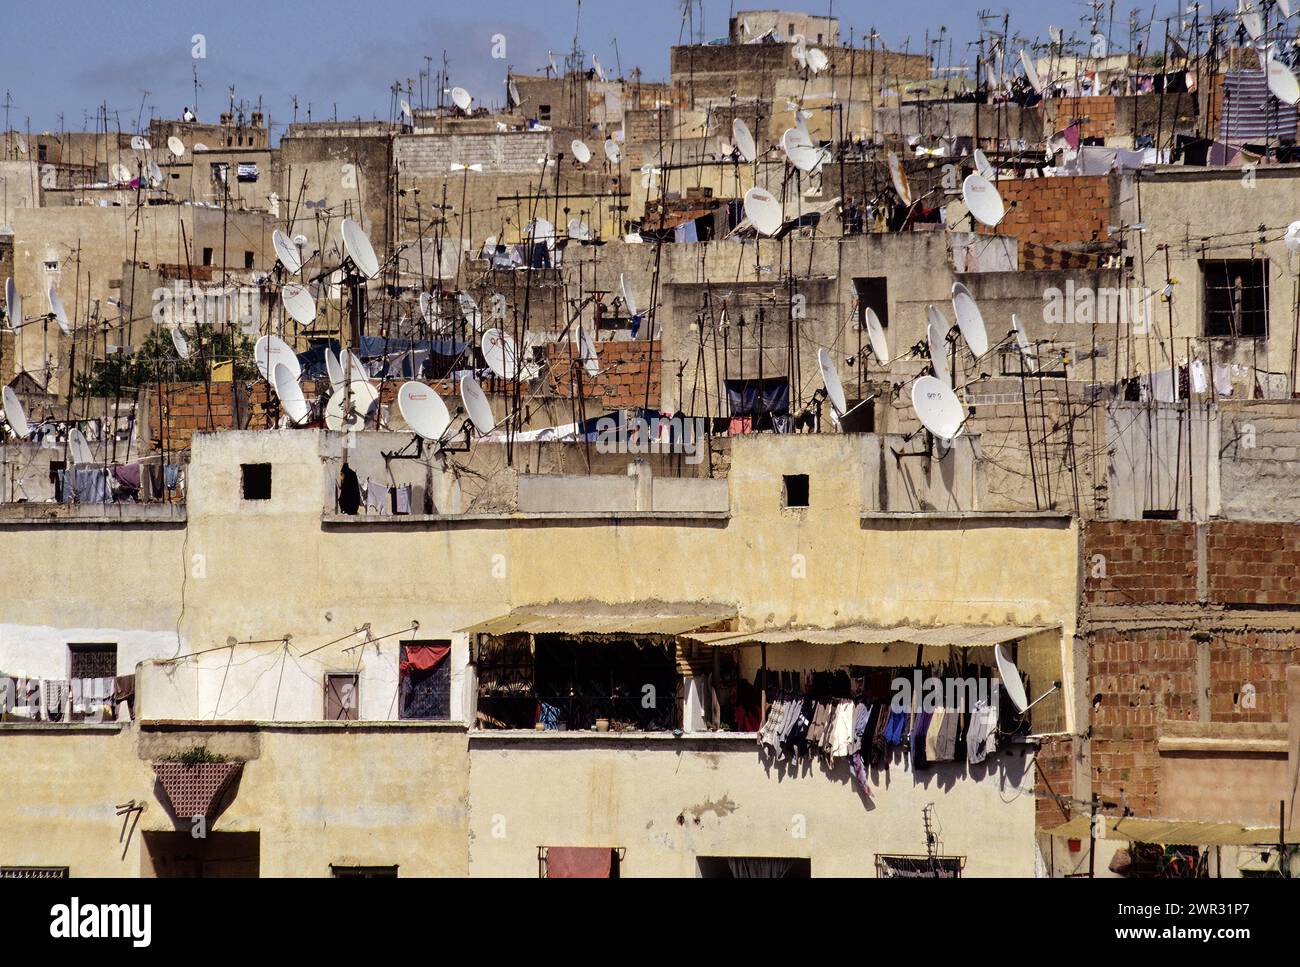 Fès, Maroc - ces antennes paraboliques au cœur du vieux Fès illustrent comment la ville est en transition entre le mode de vie moderne et traditionnel. Banque D'Images